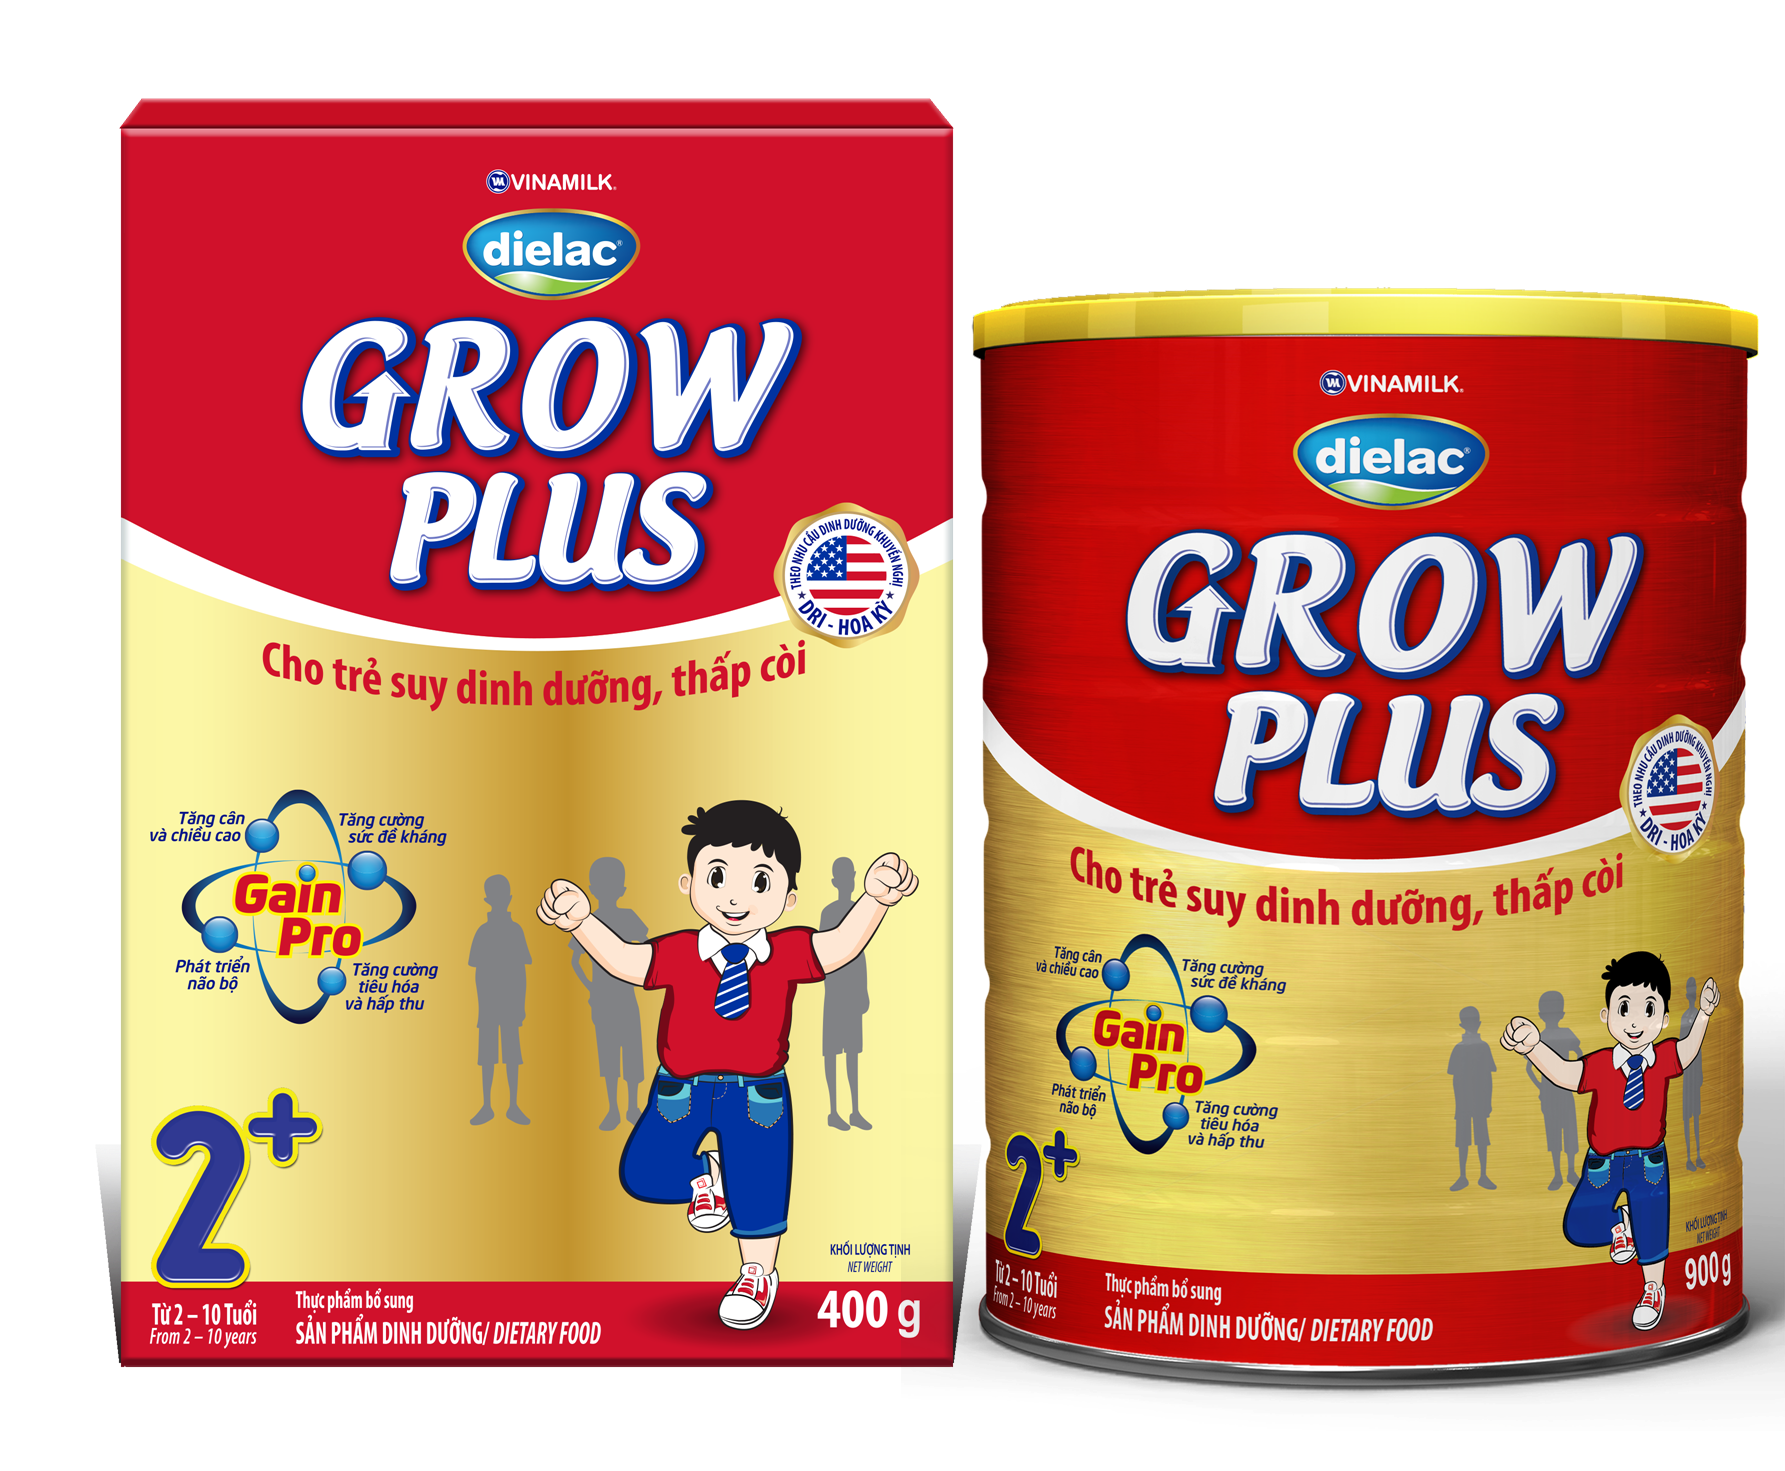 Dielac Grow Plus mang đến 4 lợi ích nổi trội cho trẻ suy dinh dưỡng thấp còi: Tăng cân và chiều cao; Tăng sức đề kháng; Phát triển não bộ; Tăng cường tiêu hóa hấp thu